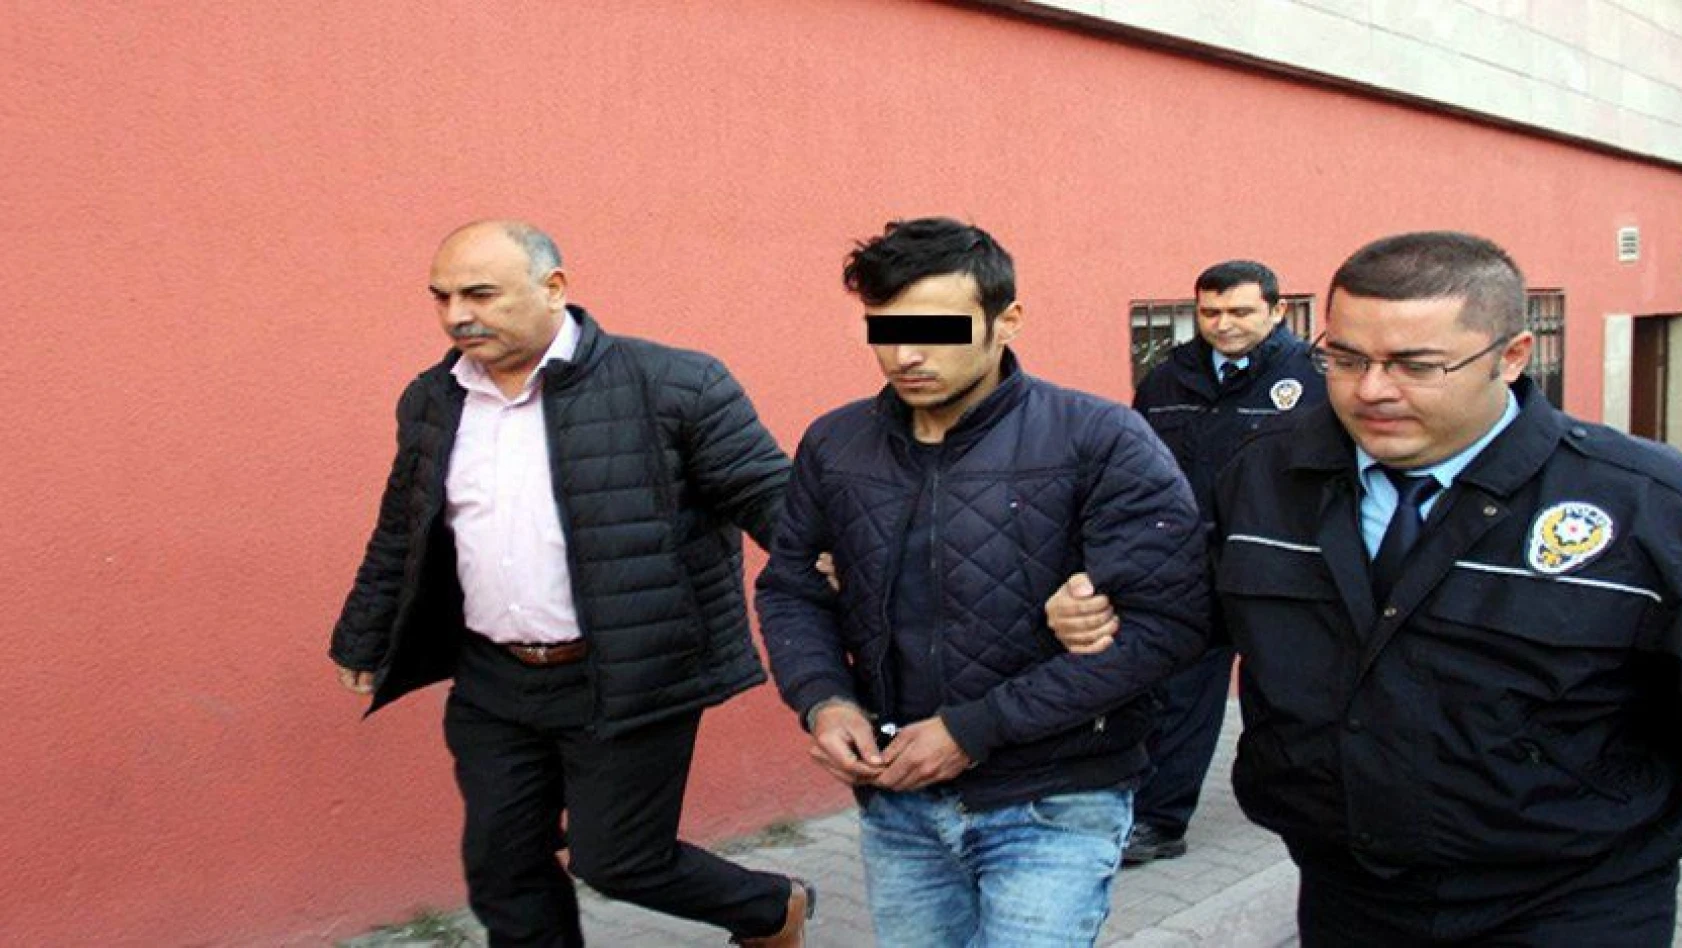 CHP binasını kundaklayan şahıs tutuklandı